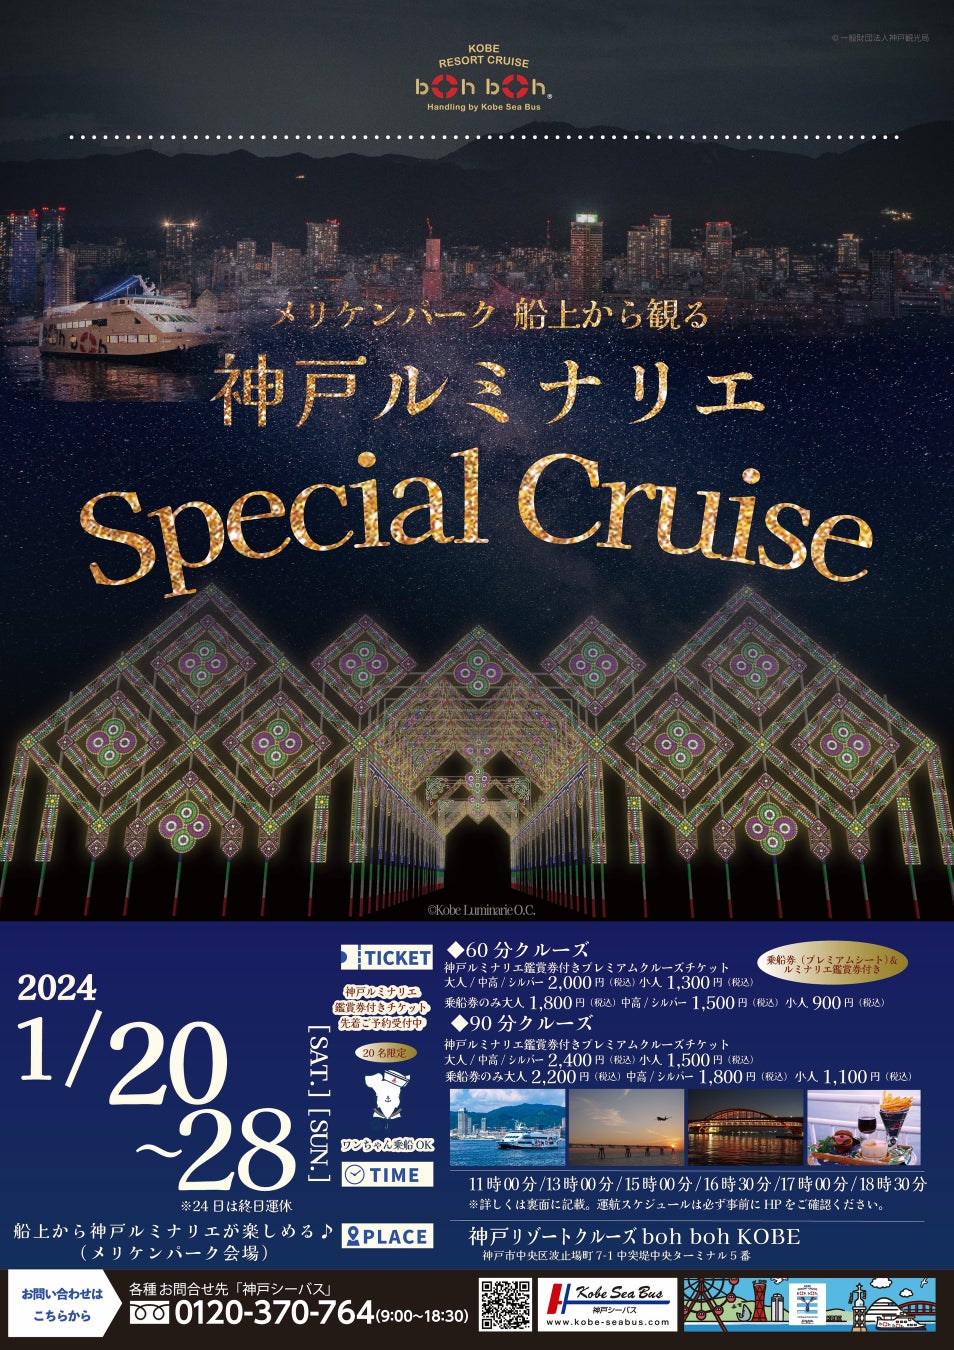 船上から見るルミナリエ！「2024神戸ルミナリエスペシャルクルーズ」を開催！船上からゆっくりと贅沢に幻想的な光をお楽しみください♪